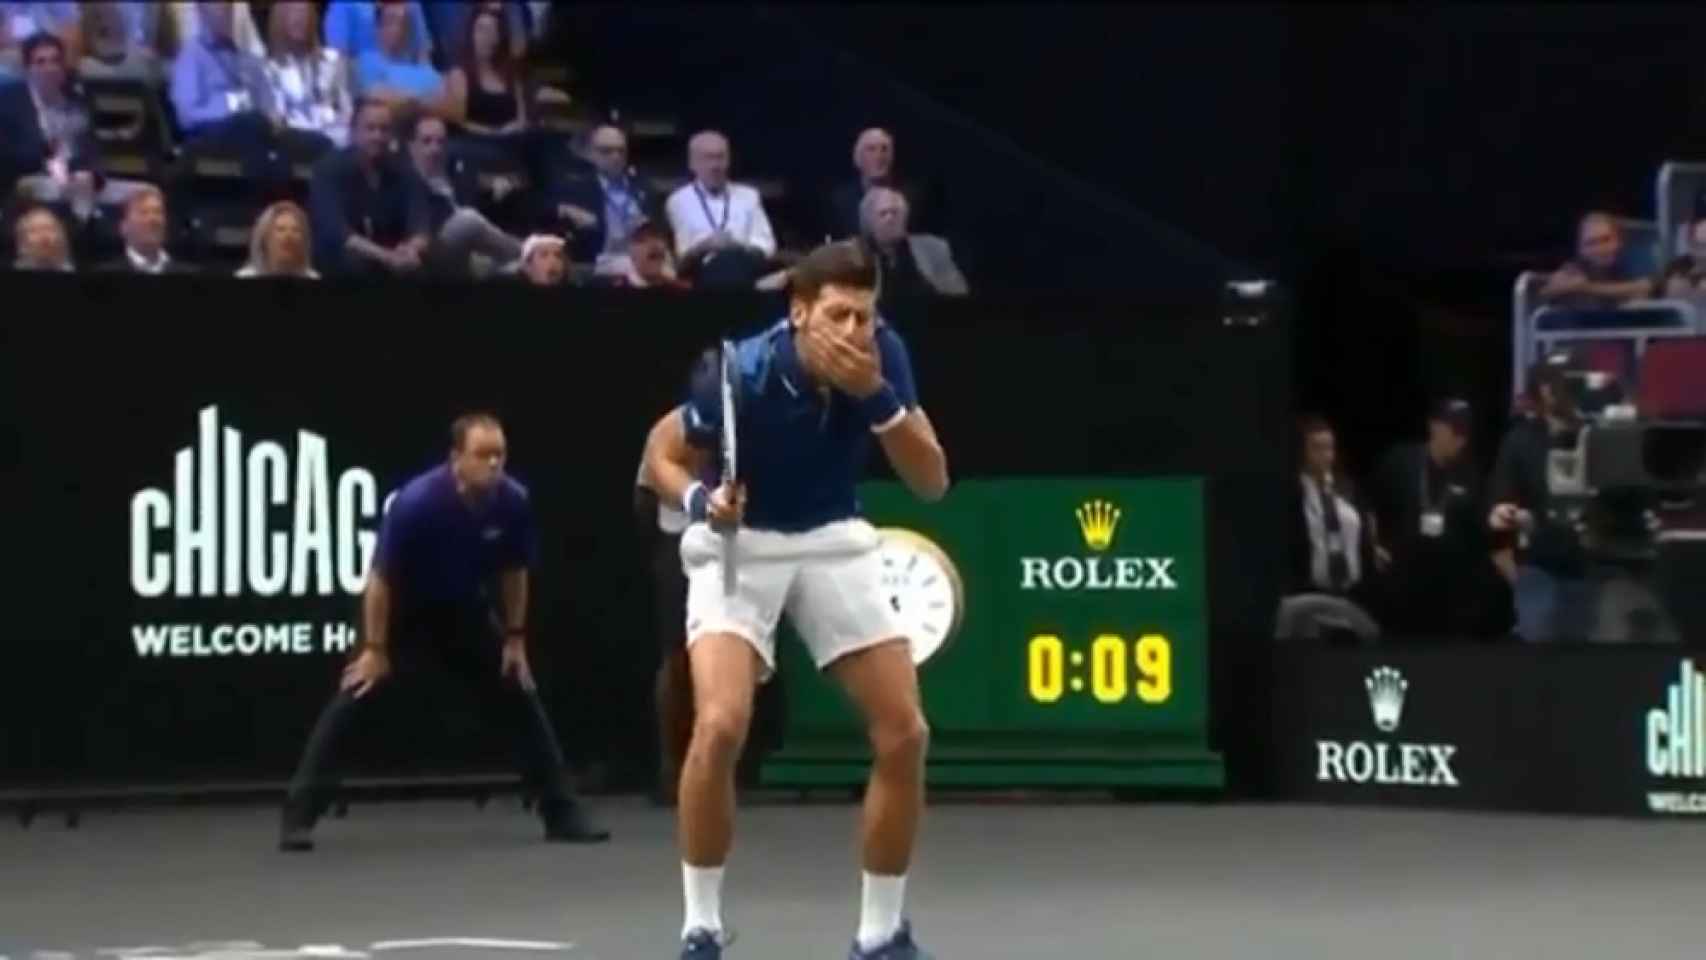 La divertida reacción de Djokovic tras su pelotazo a Federer en la Laver Cup